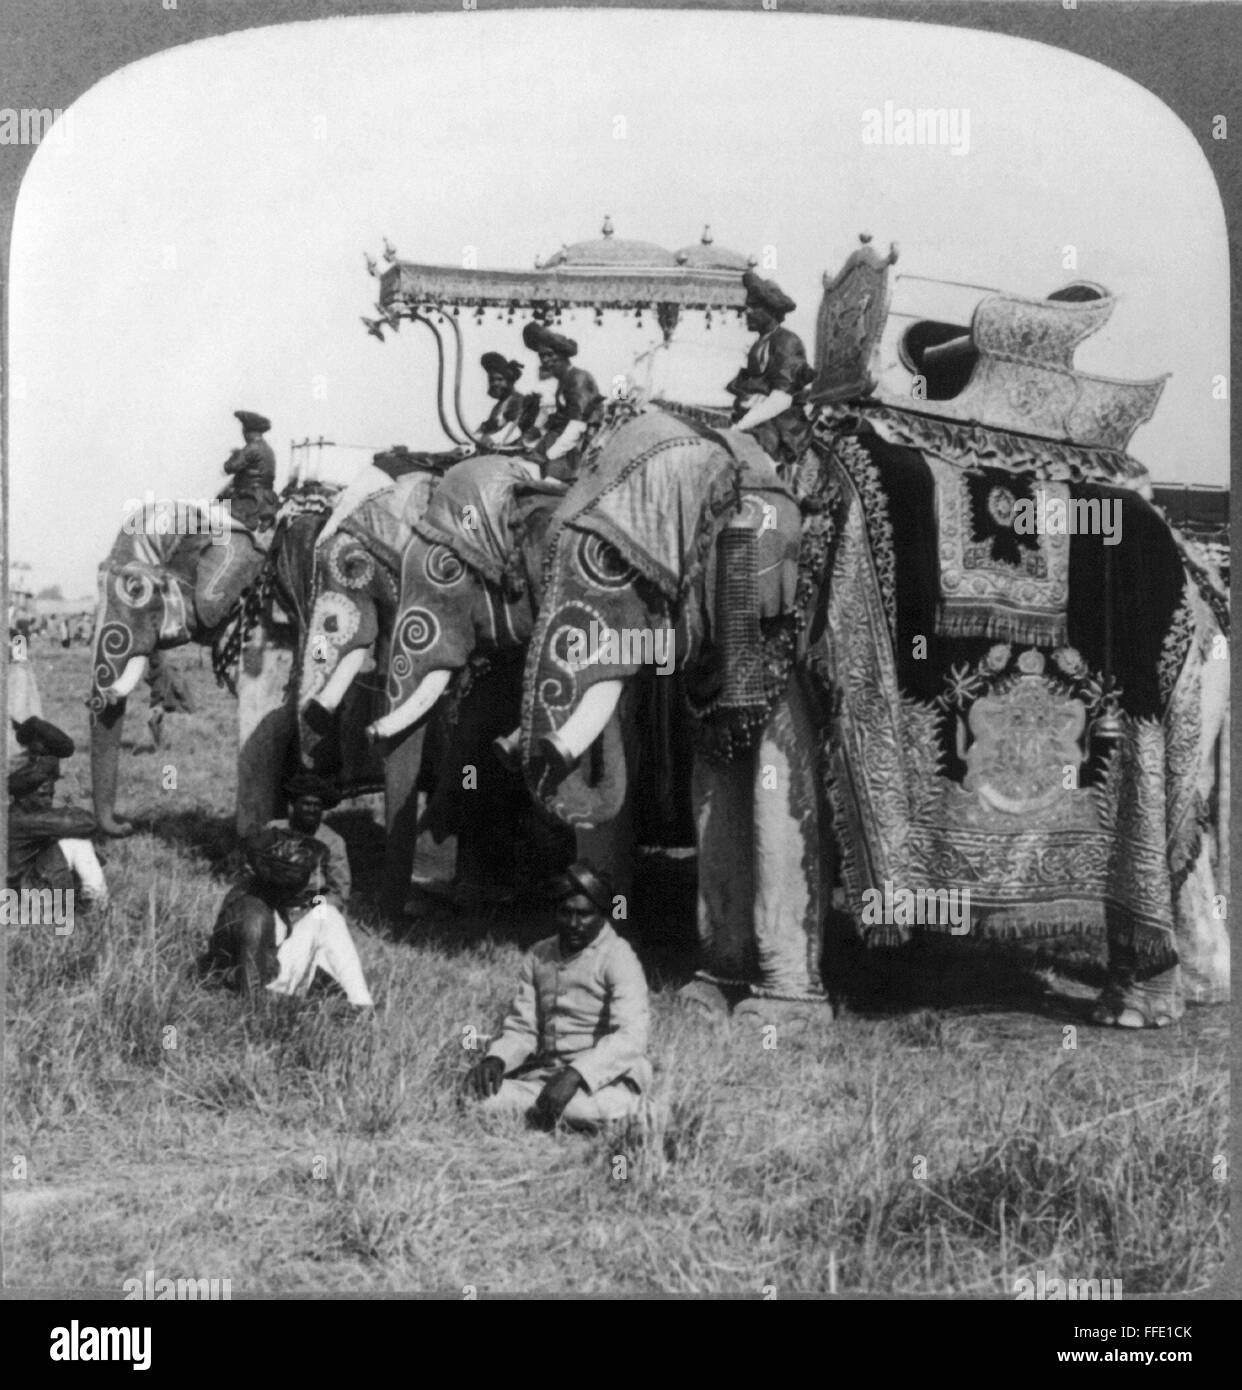 DELHI : éléphants./nDecorated les éléphants de l'état d'HH Maharaja Madhavrao Scindia II Scindia de Gwalior debout dans un champ, Durbar, Delhi, Inde. Stéréophotogramme, c1903. Banque D'Images